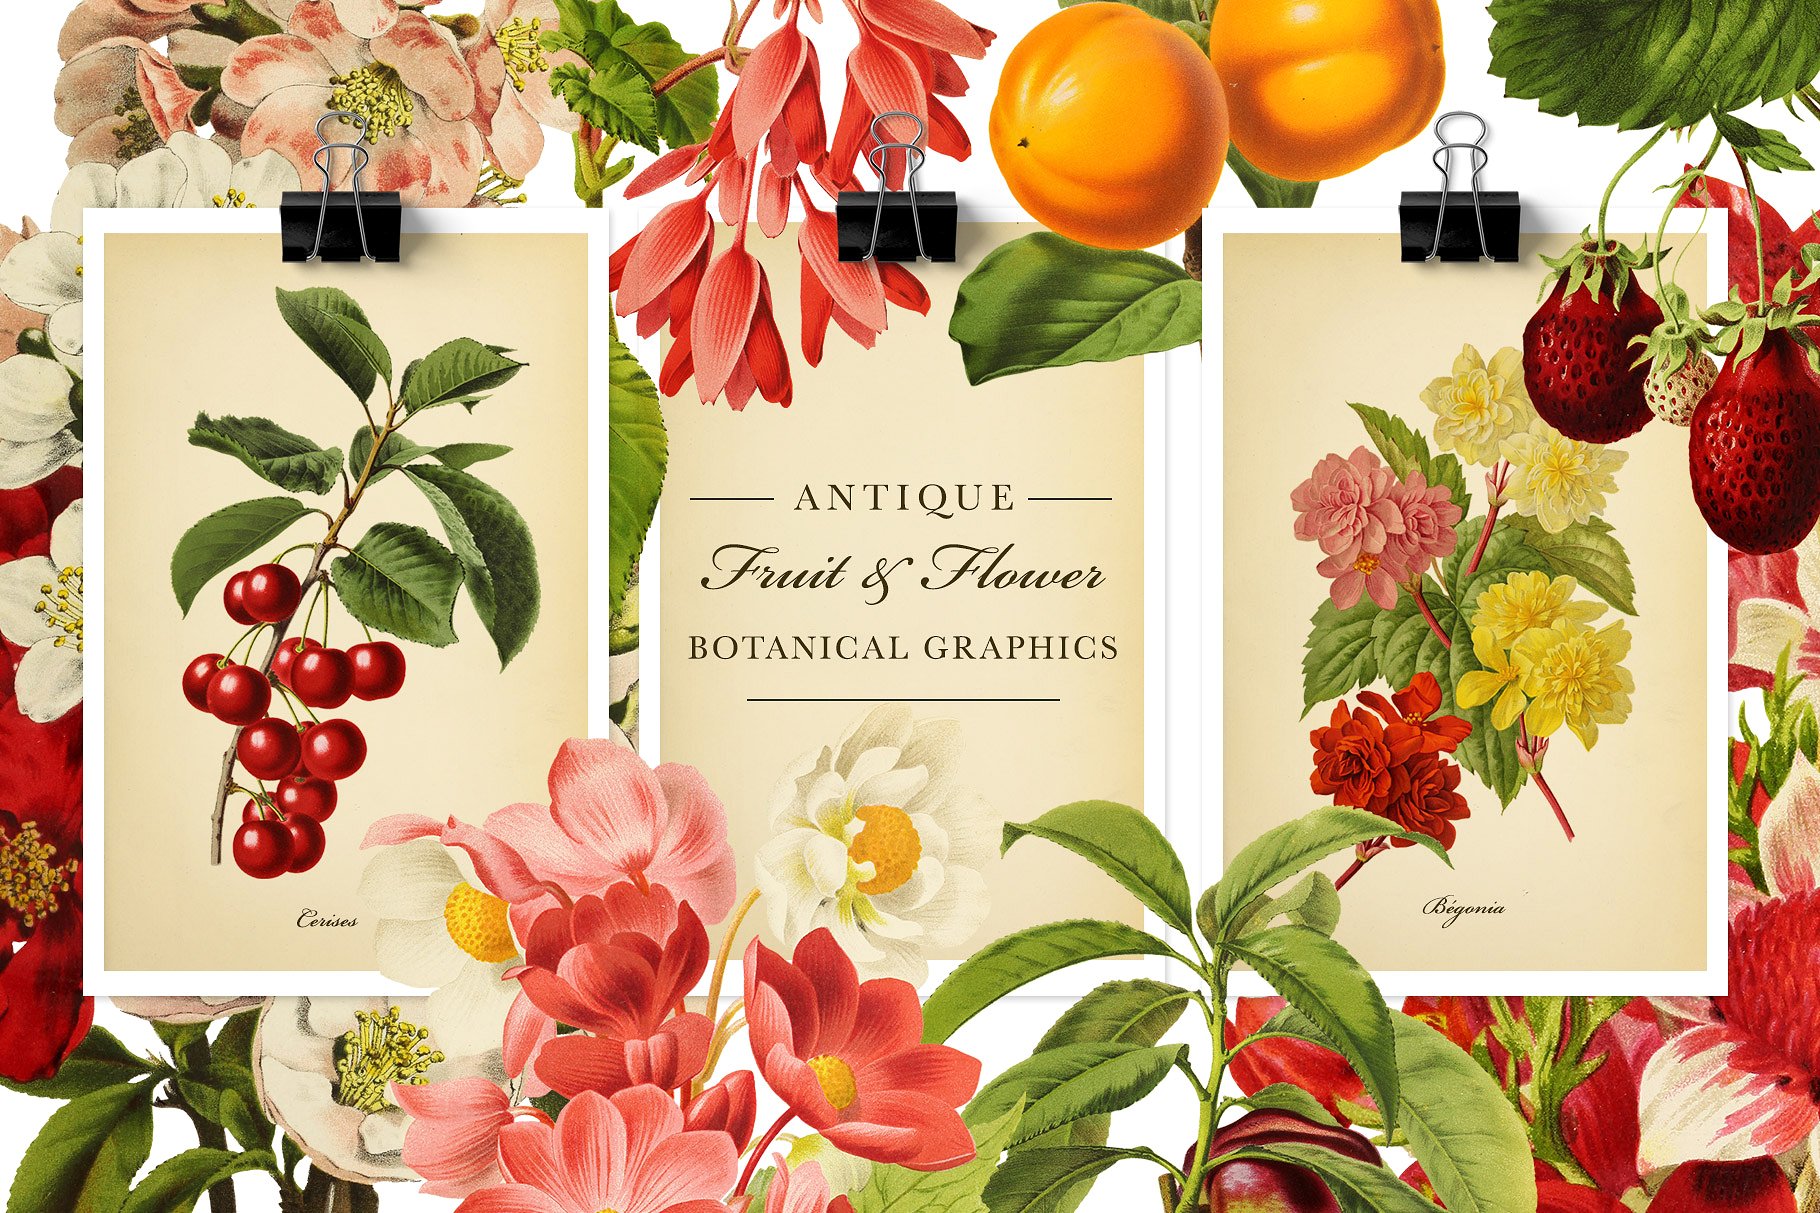 复古风格水果&花卉设计素材 Antique-Frui